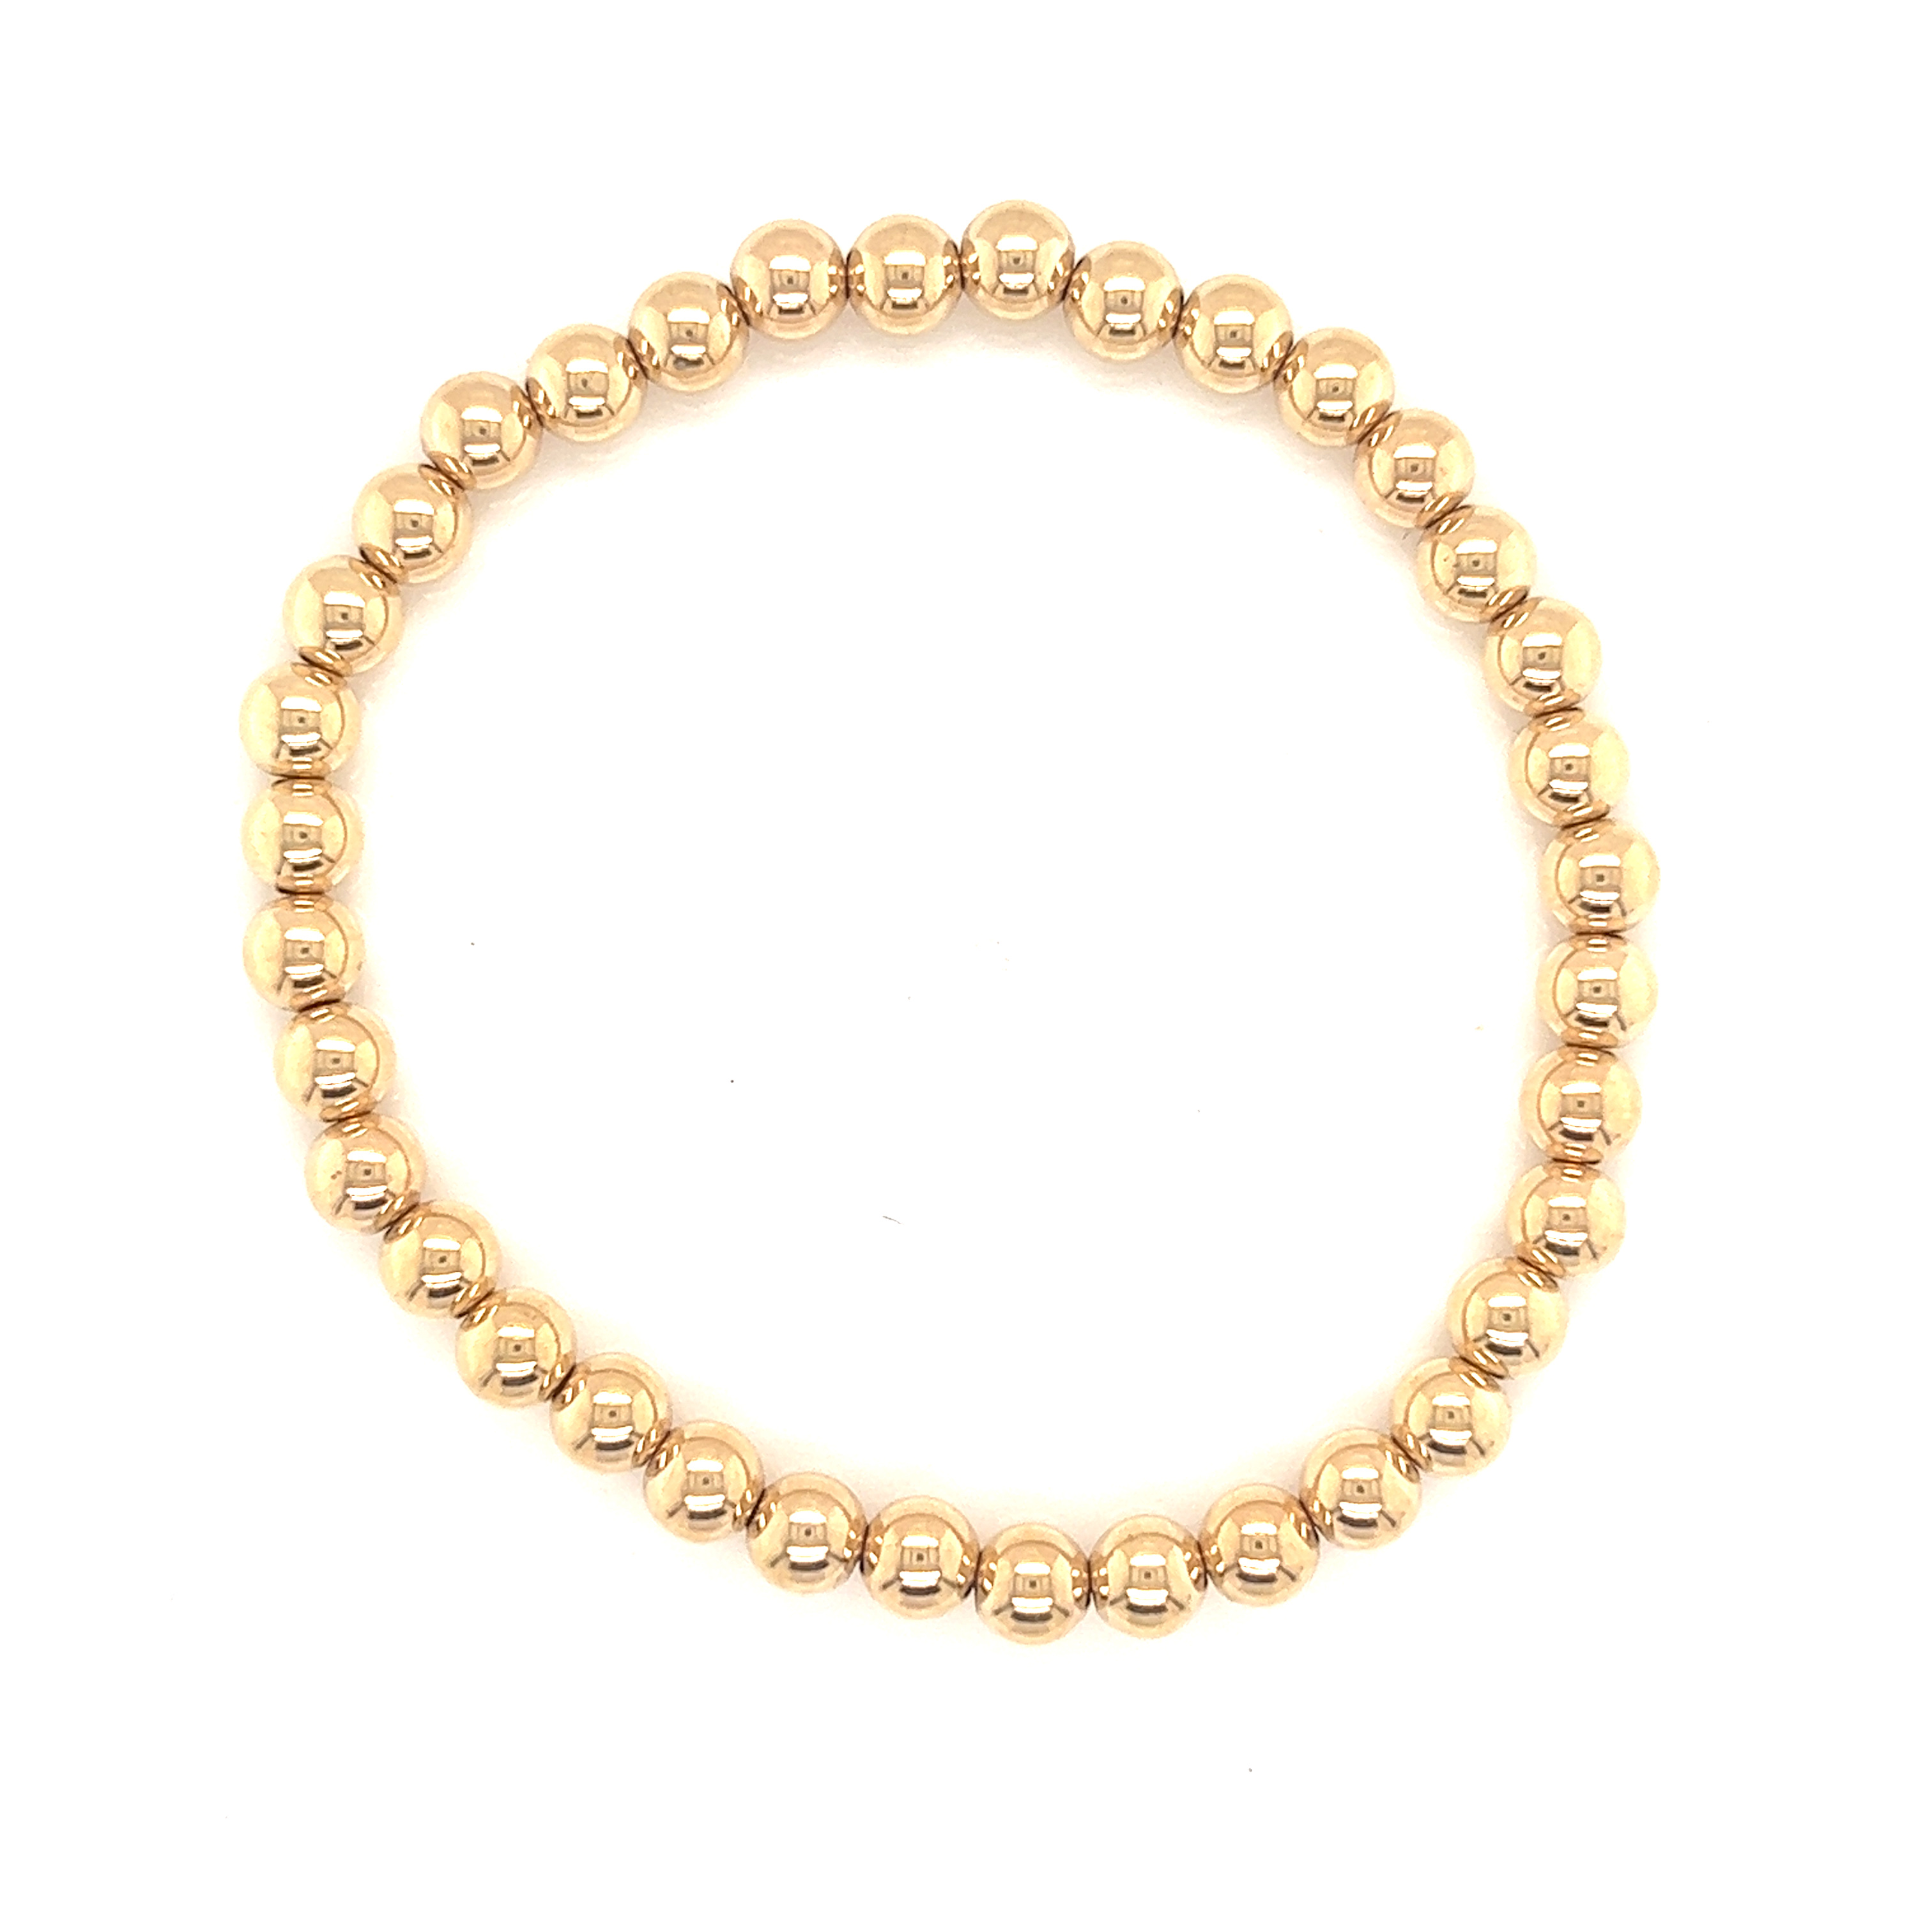 5mm Gold Filled Beaded Bracelet - 6.5"